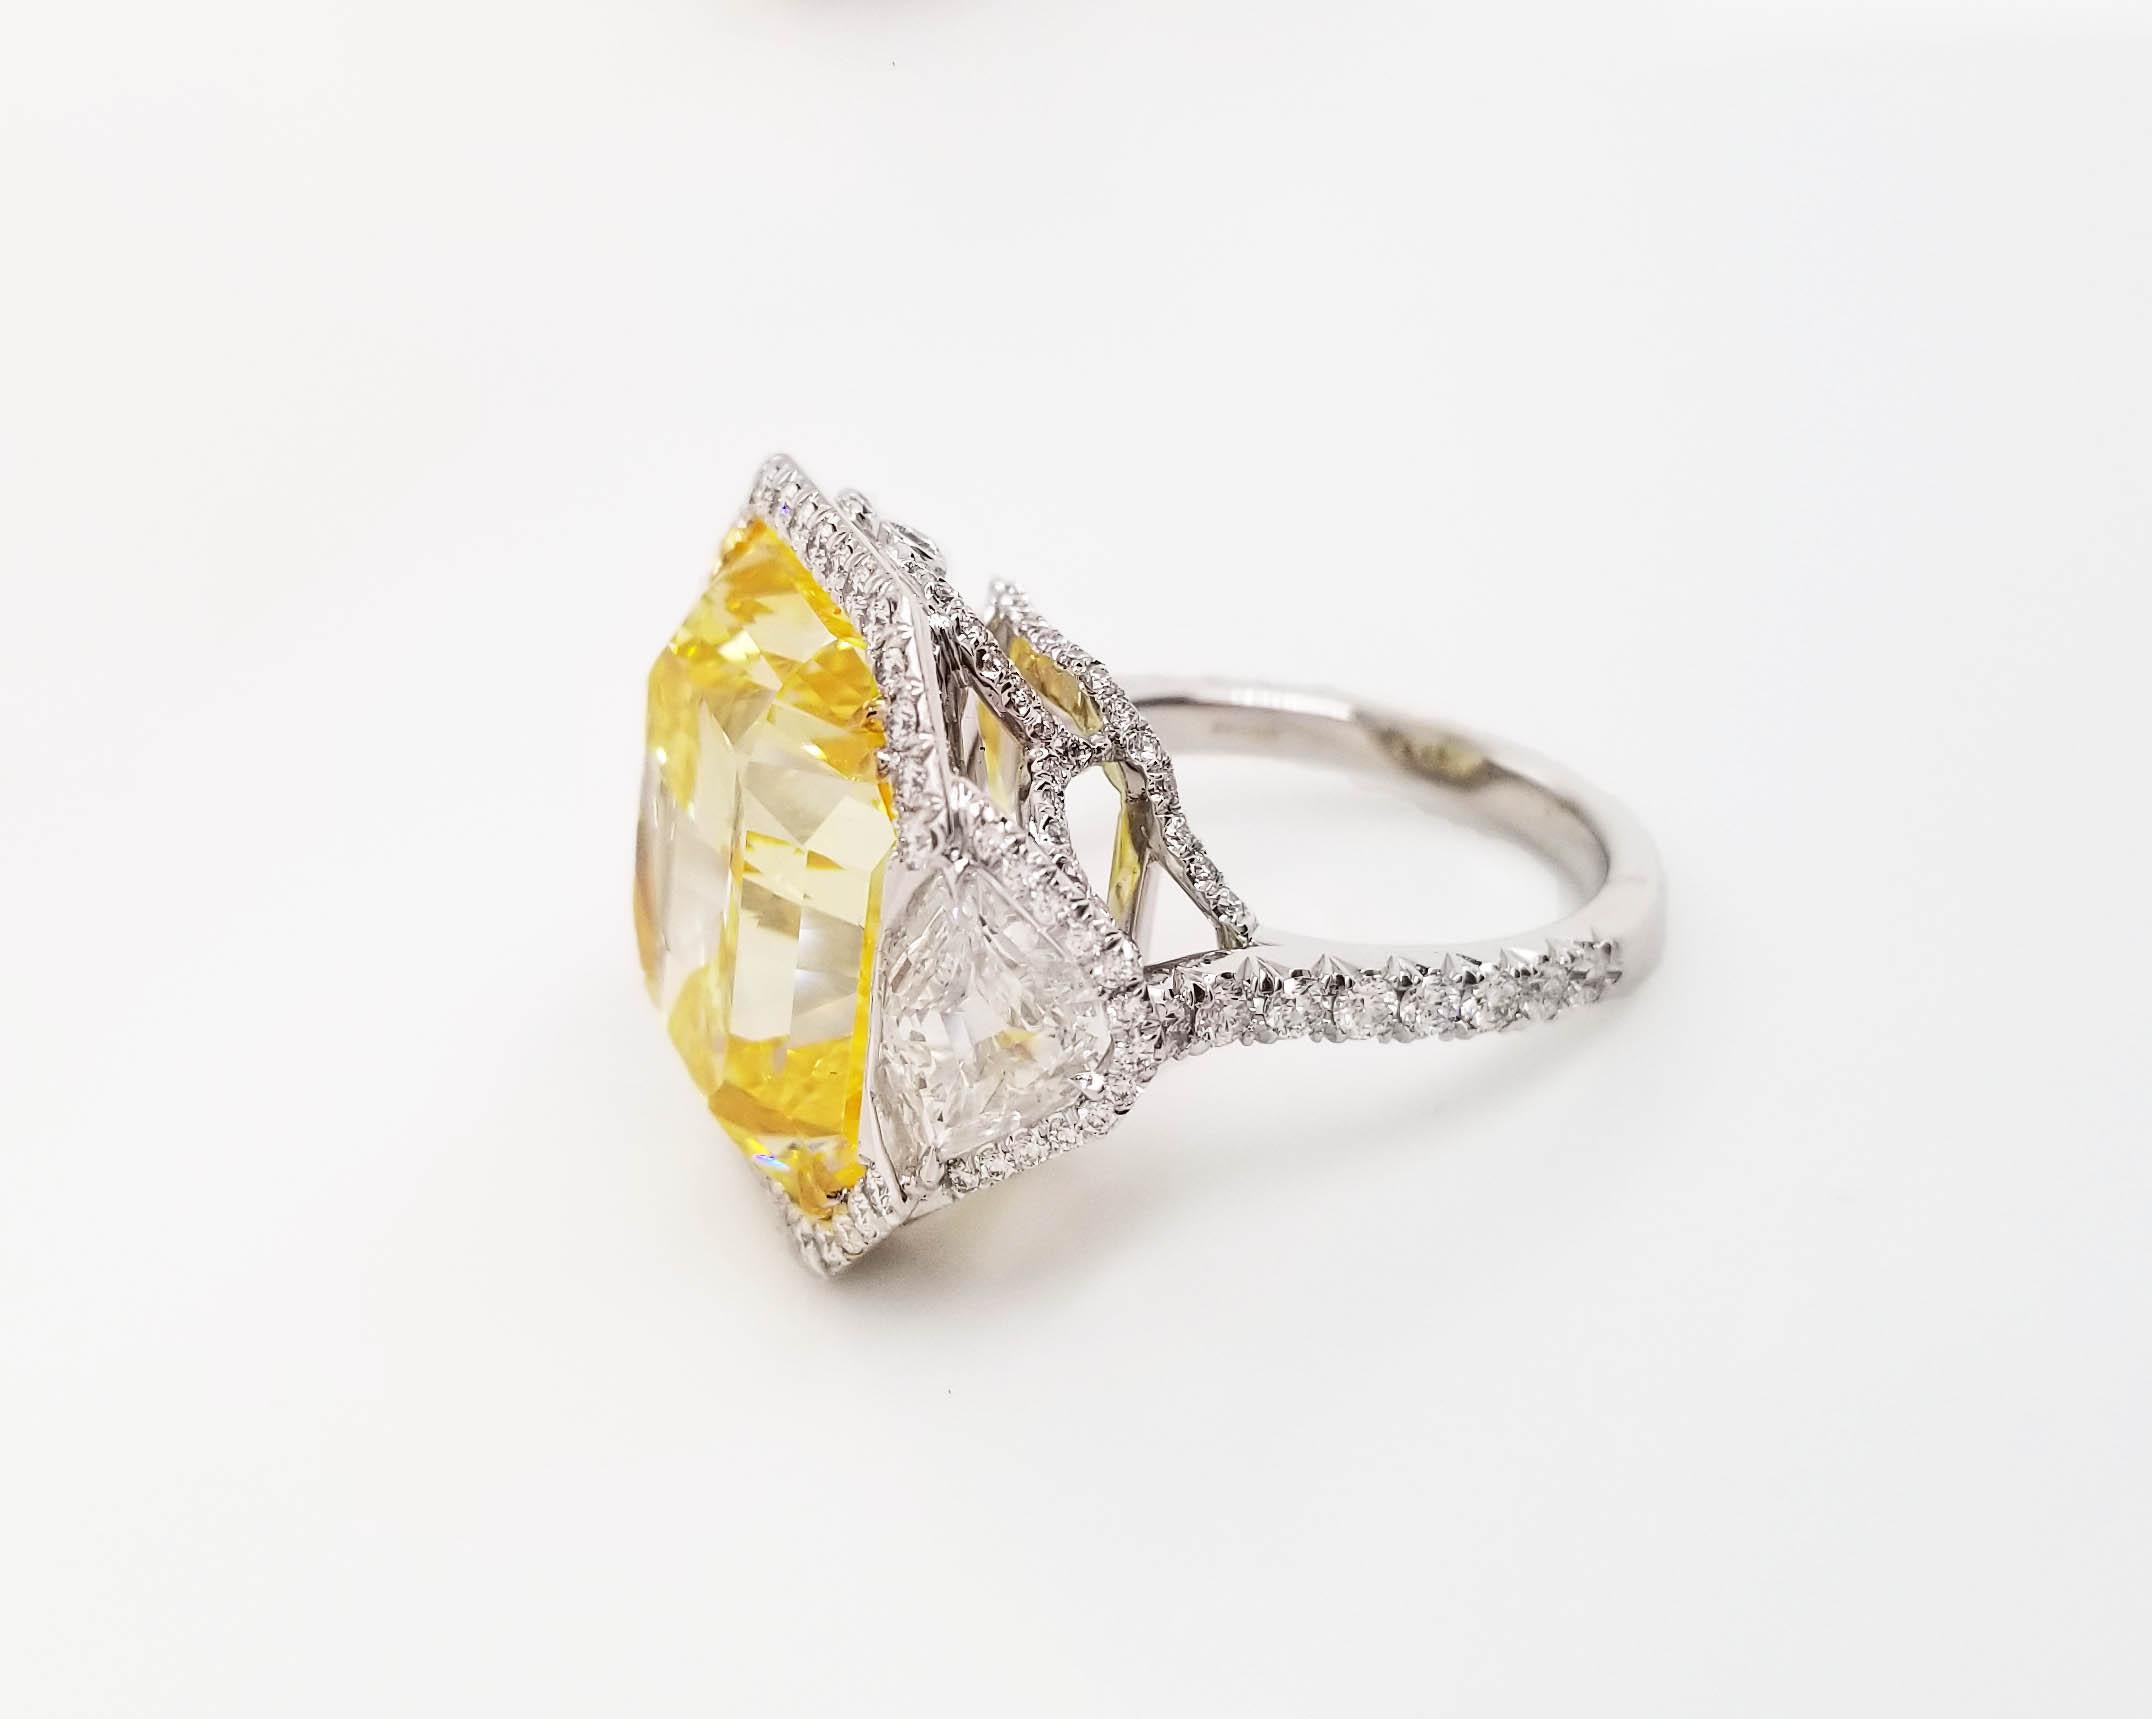 Diese erstaunliche klassische Ring von Scarselli verfügt über eine 20-Karat Fancy Vivid Yellow Radiant Cut Diamond mit GIA-Zertifikat 5151483883 (siehe Zertifikat Bild für detaillierte Informationen Stein). Der Diamant in der Mitte ist von 1,10